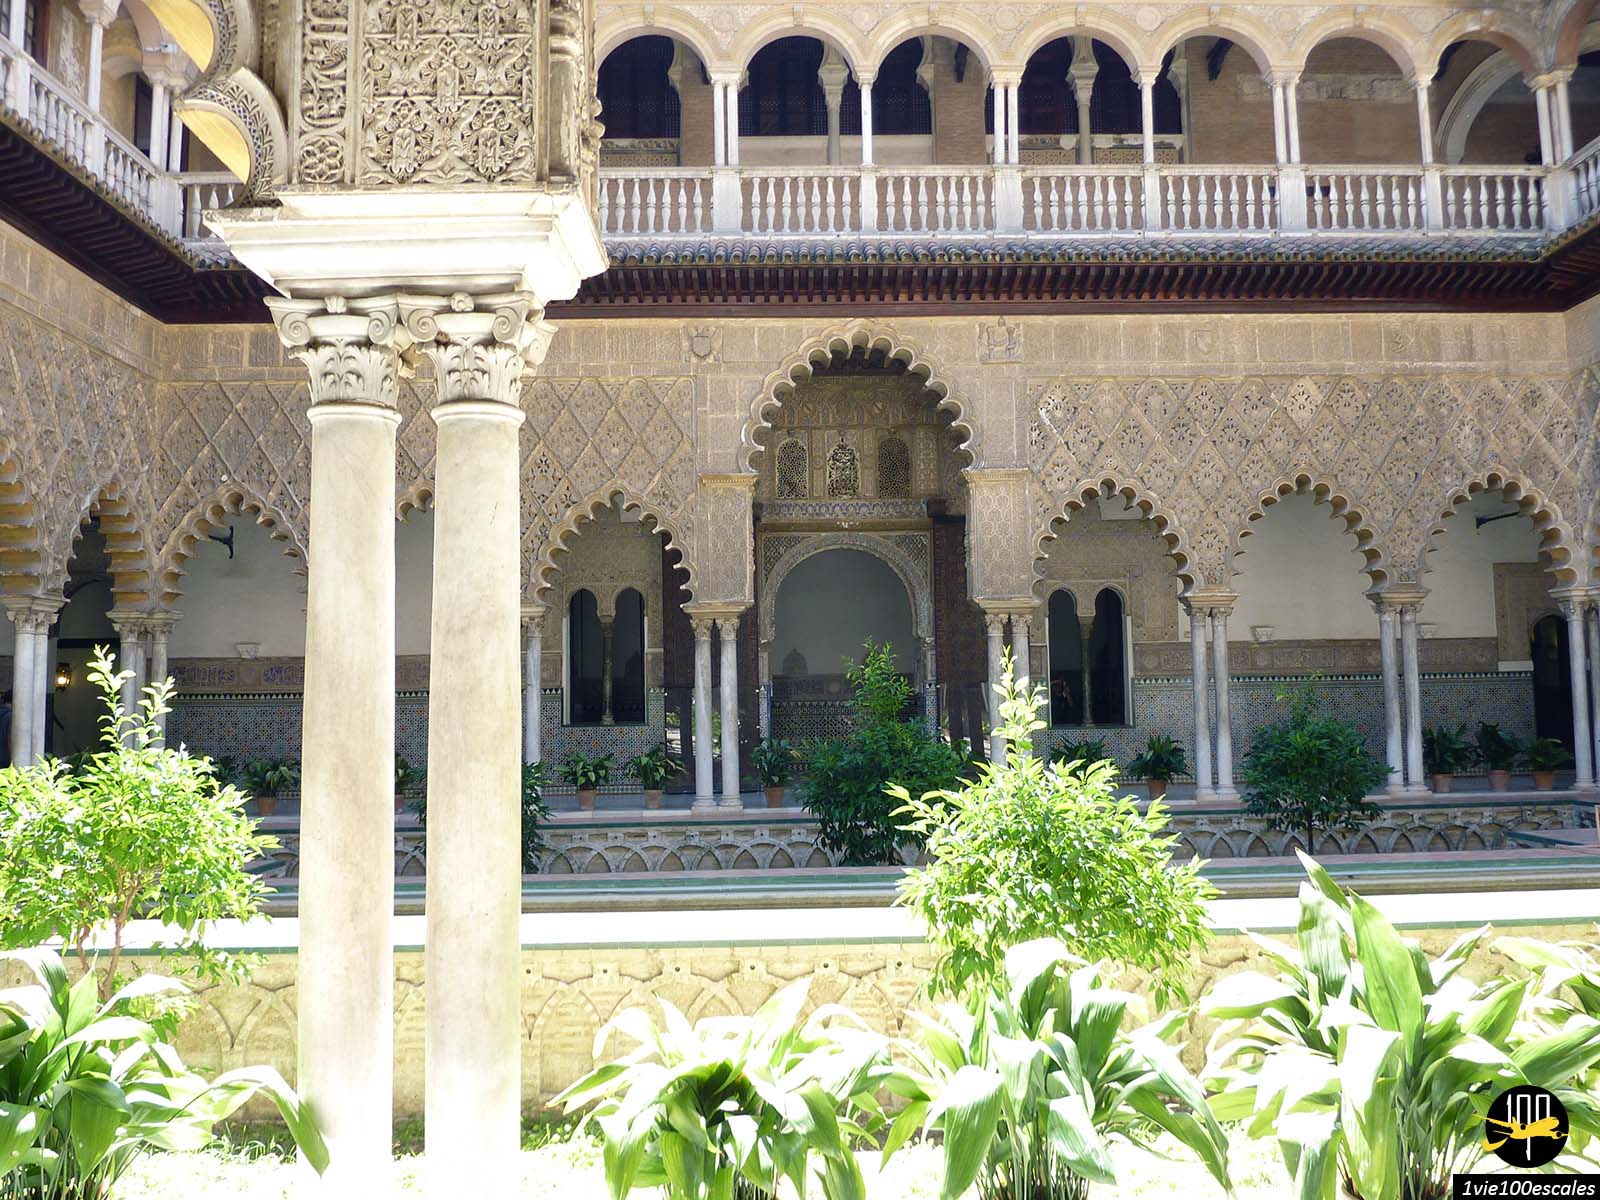 Le palais mudéjar mélange harmonieusement les styles islamique et hispano-chrétien et abrite des salles richement décorées de tapis